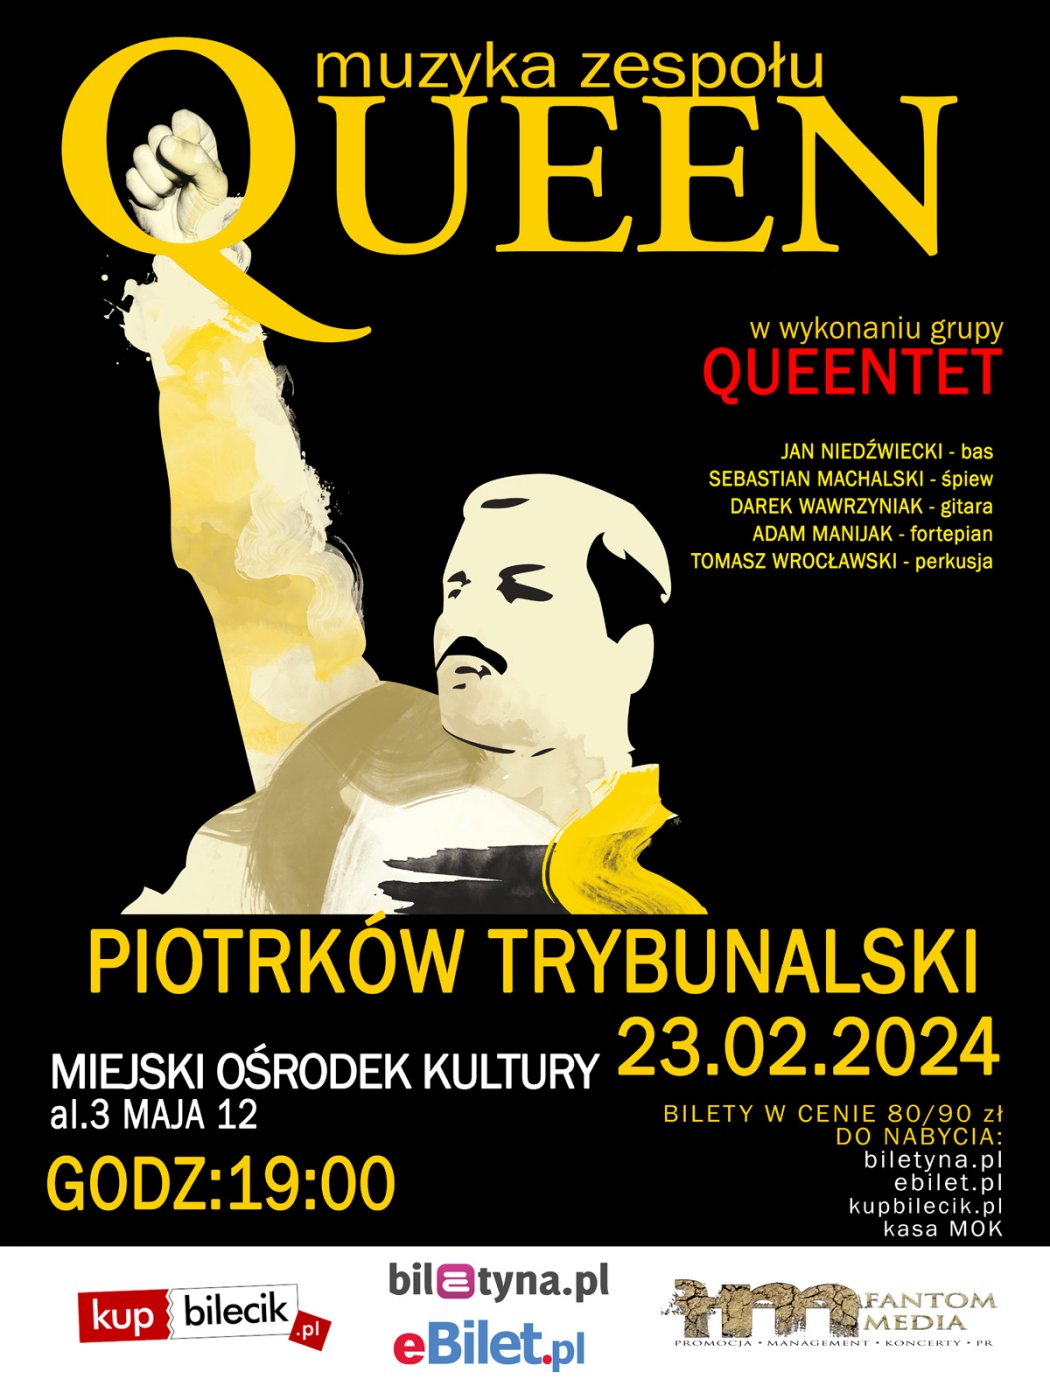 Queentet - muzyka zespołu Queen 